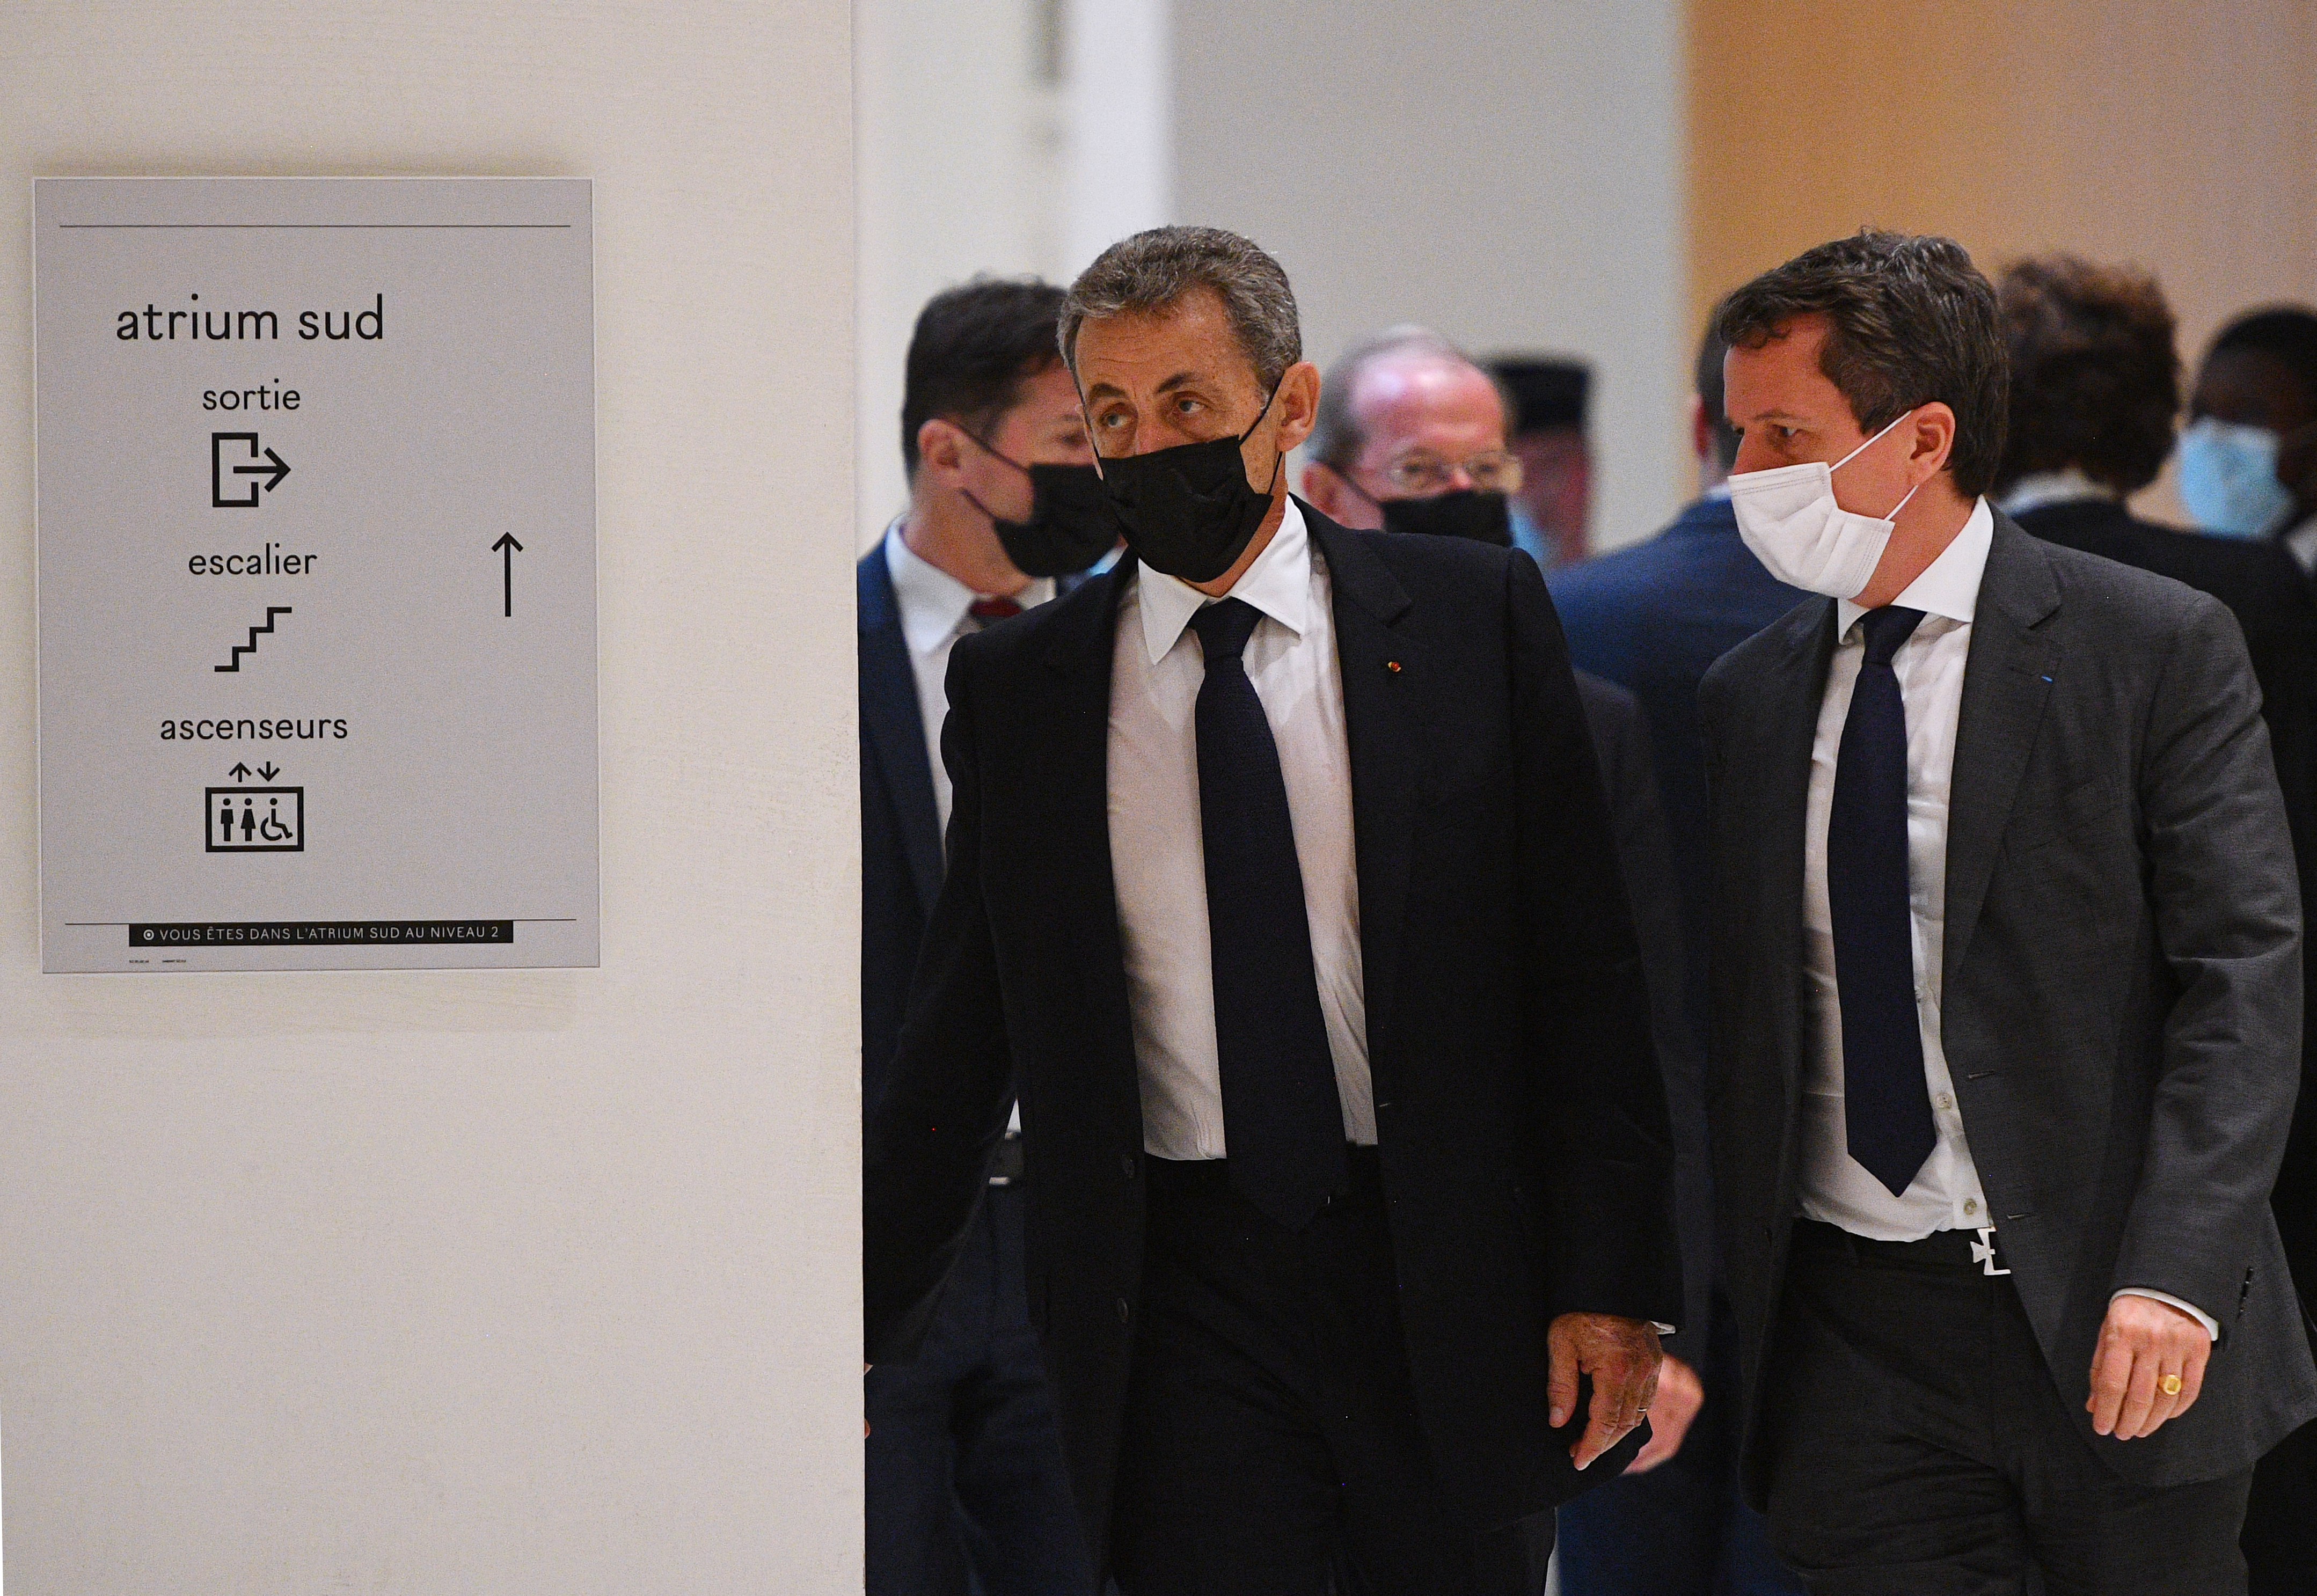 Procès Bygmalion: six mois ferme requis contre Nicolas Sarkozy